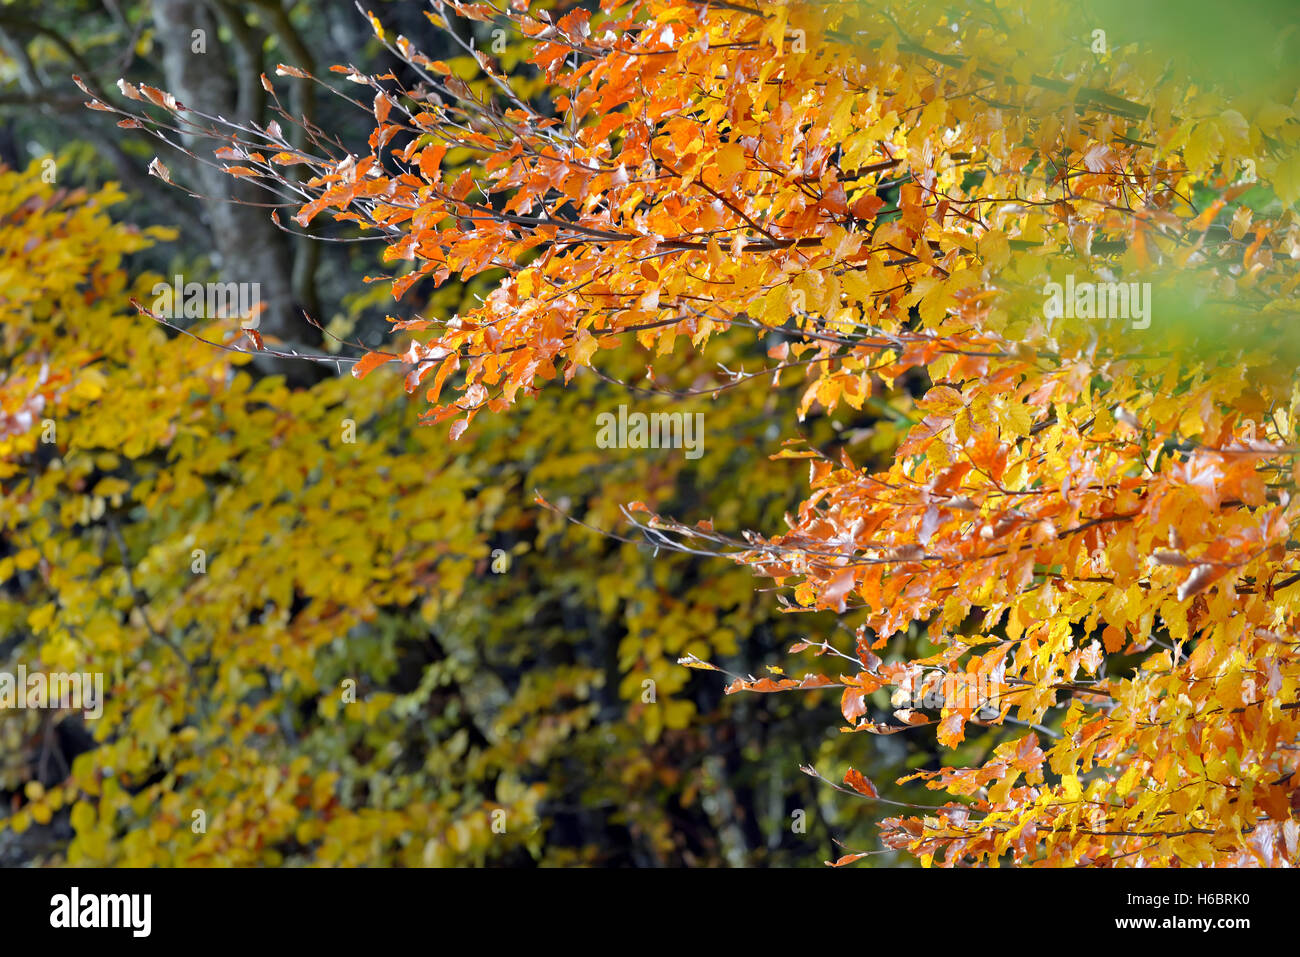 Nature fond d'automne avec les feuilles colorées Banque D'Images